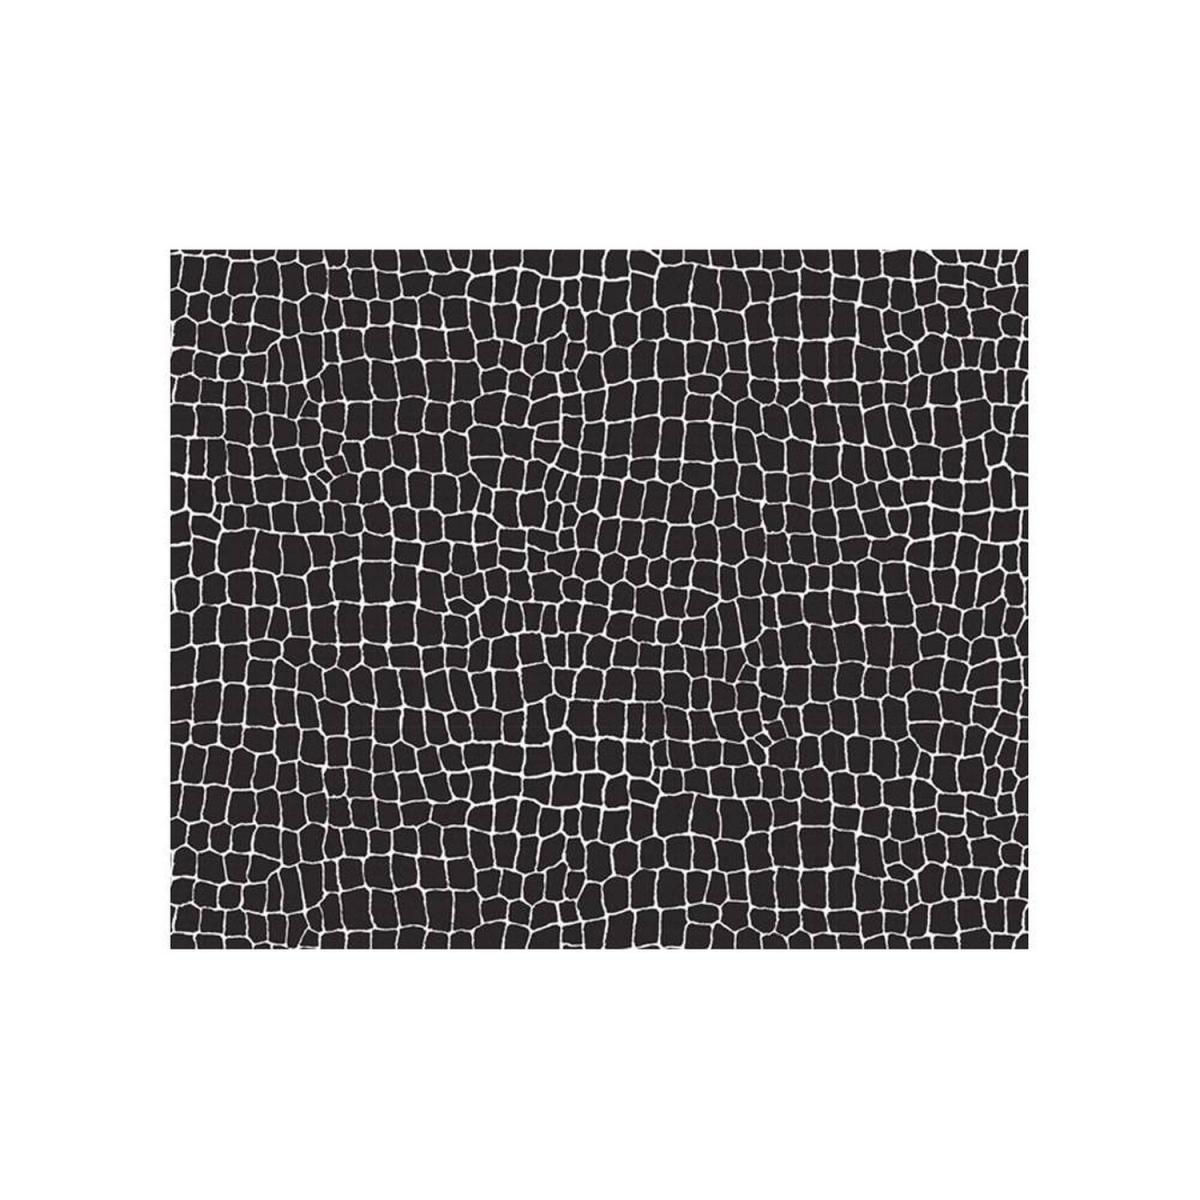 Sudtrading - Adhésif décoratif Aspect cuir noir - 150 x 45cm - Papier peint